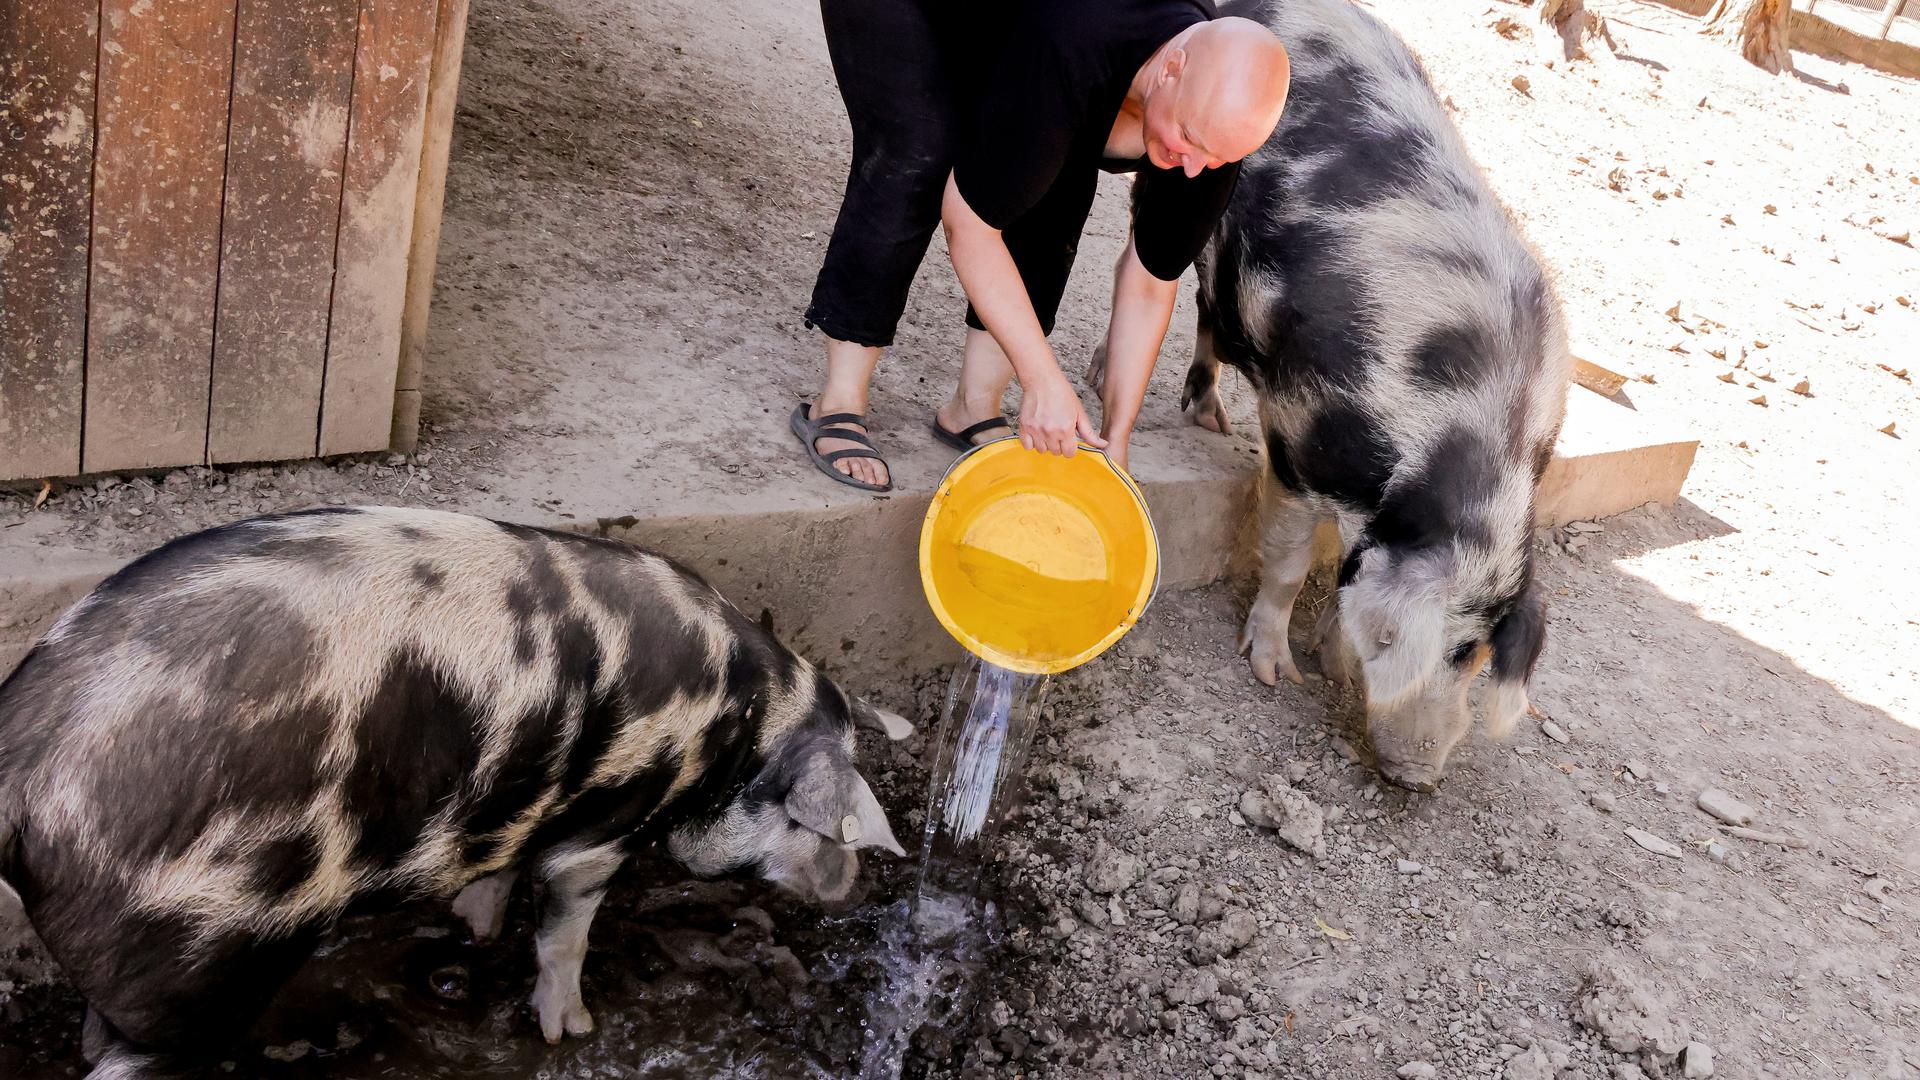 Tierparkbetreiberin Annika Willig schüttet einen Eimer Wasser in eine Suhle, damit sich die beiden Schweine erfrischen können. 